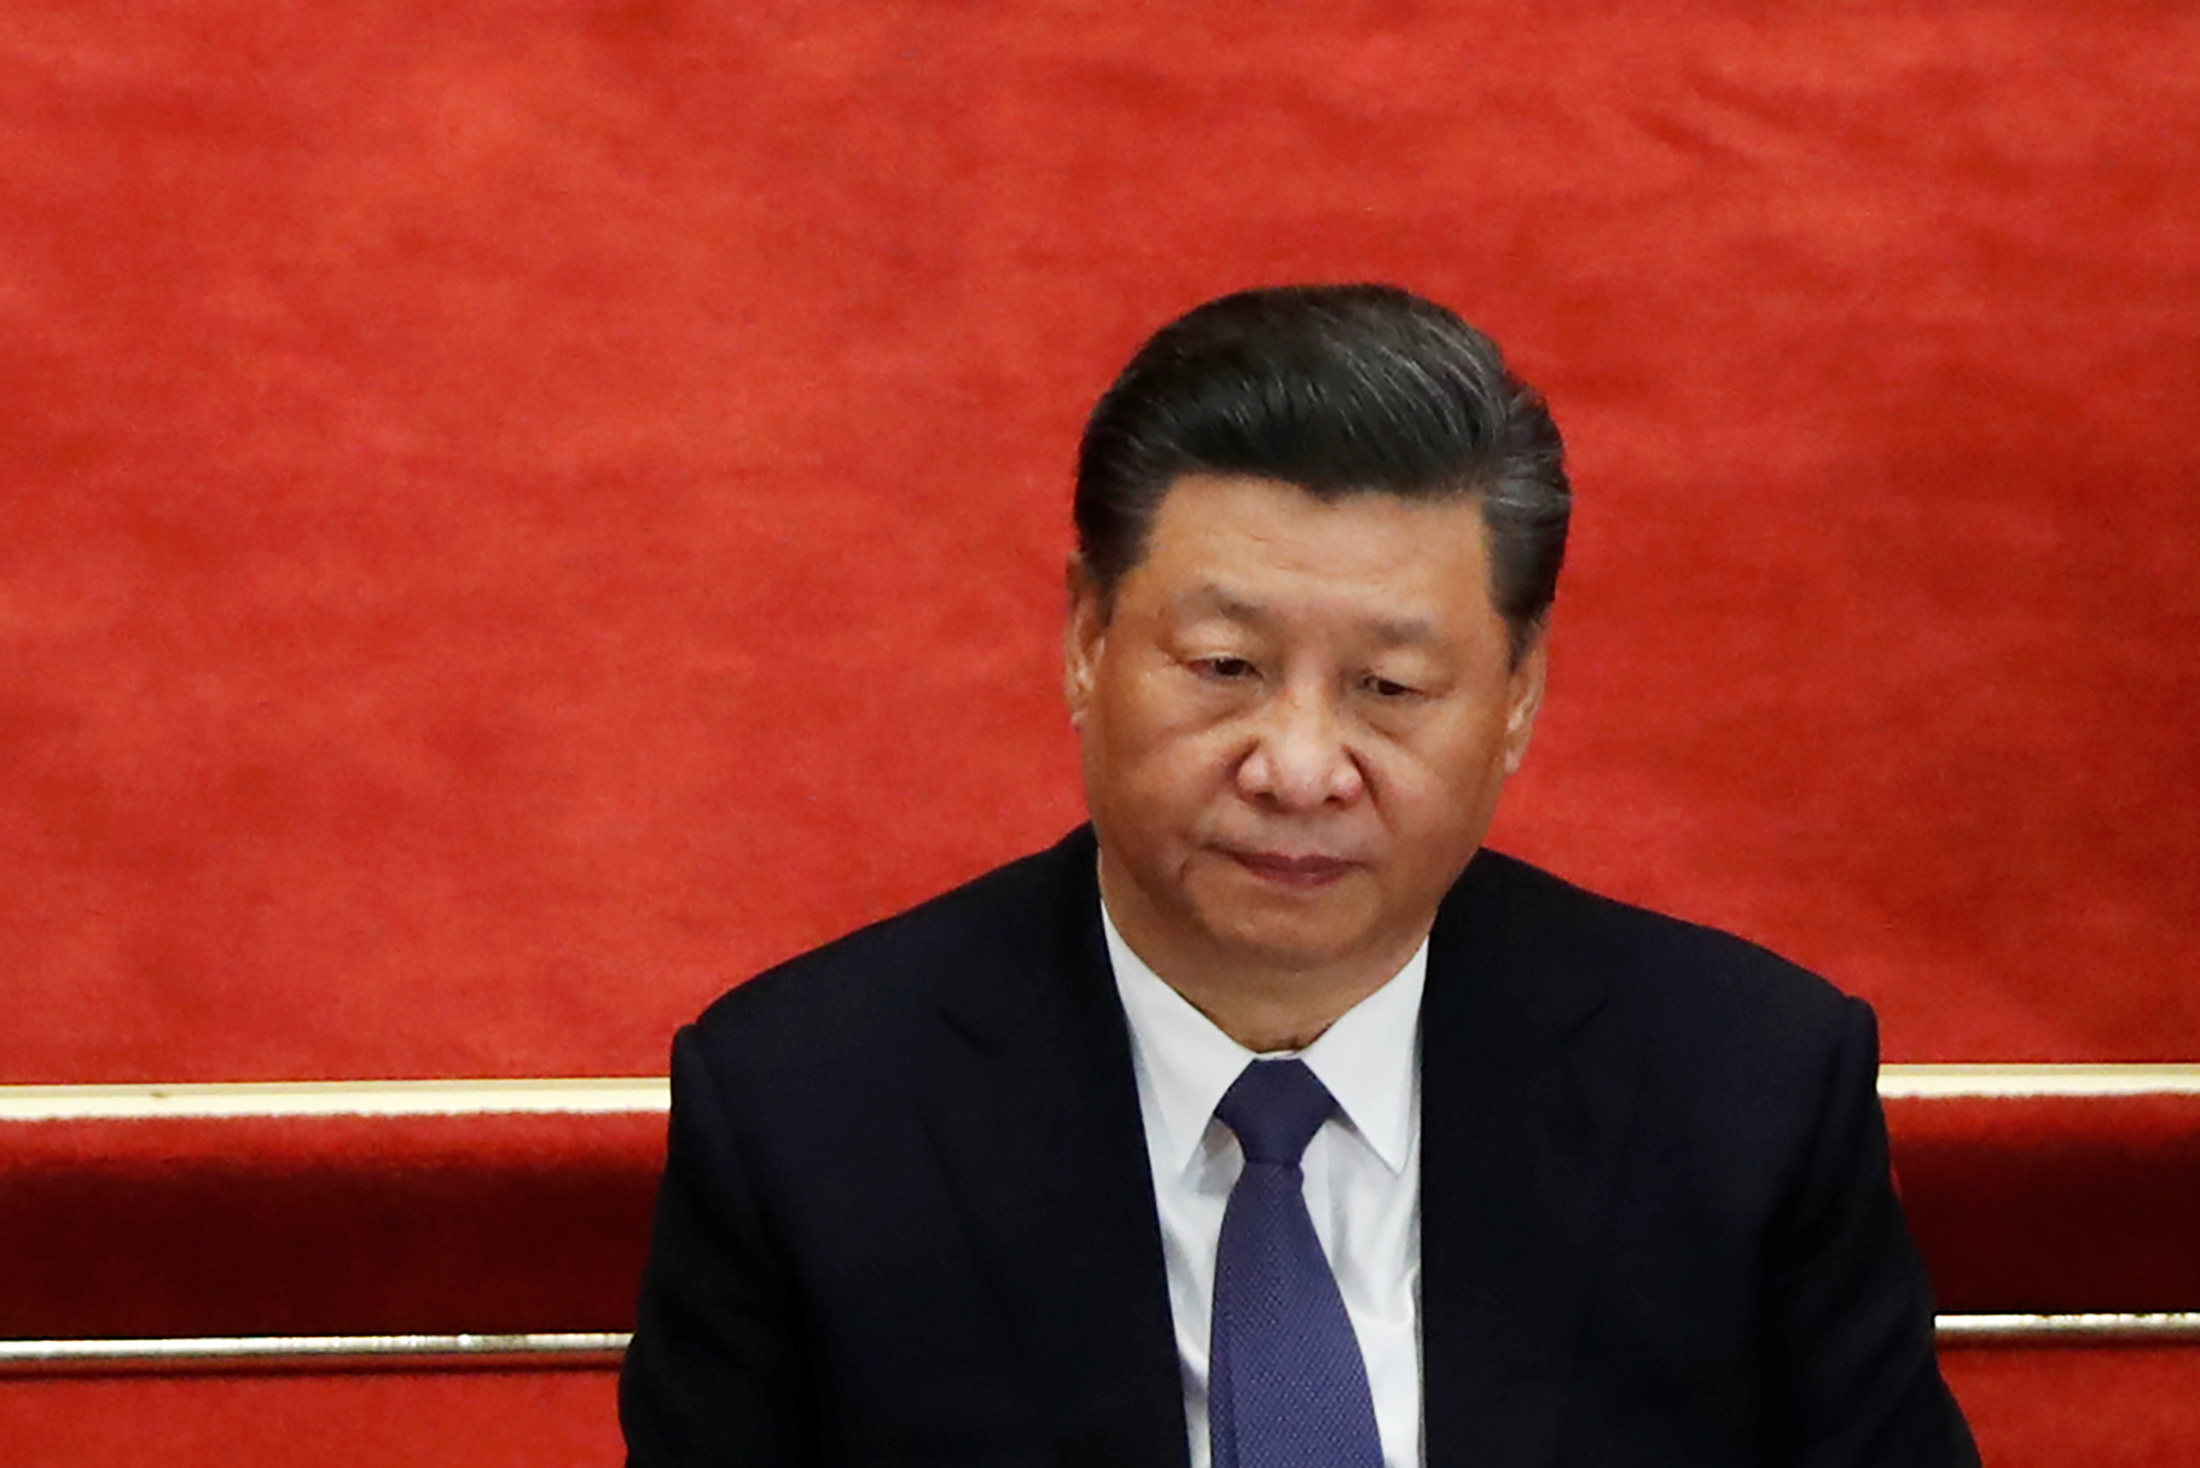 A Davos, le monde d'après Covid-19 selon Xi Jinping, sur fond de «nouvelle guerre froide»